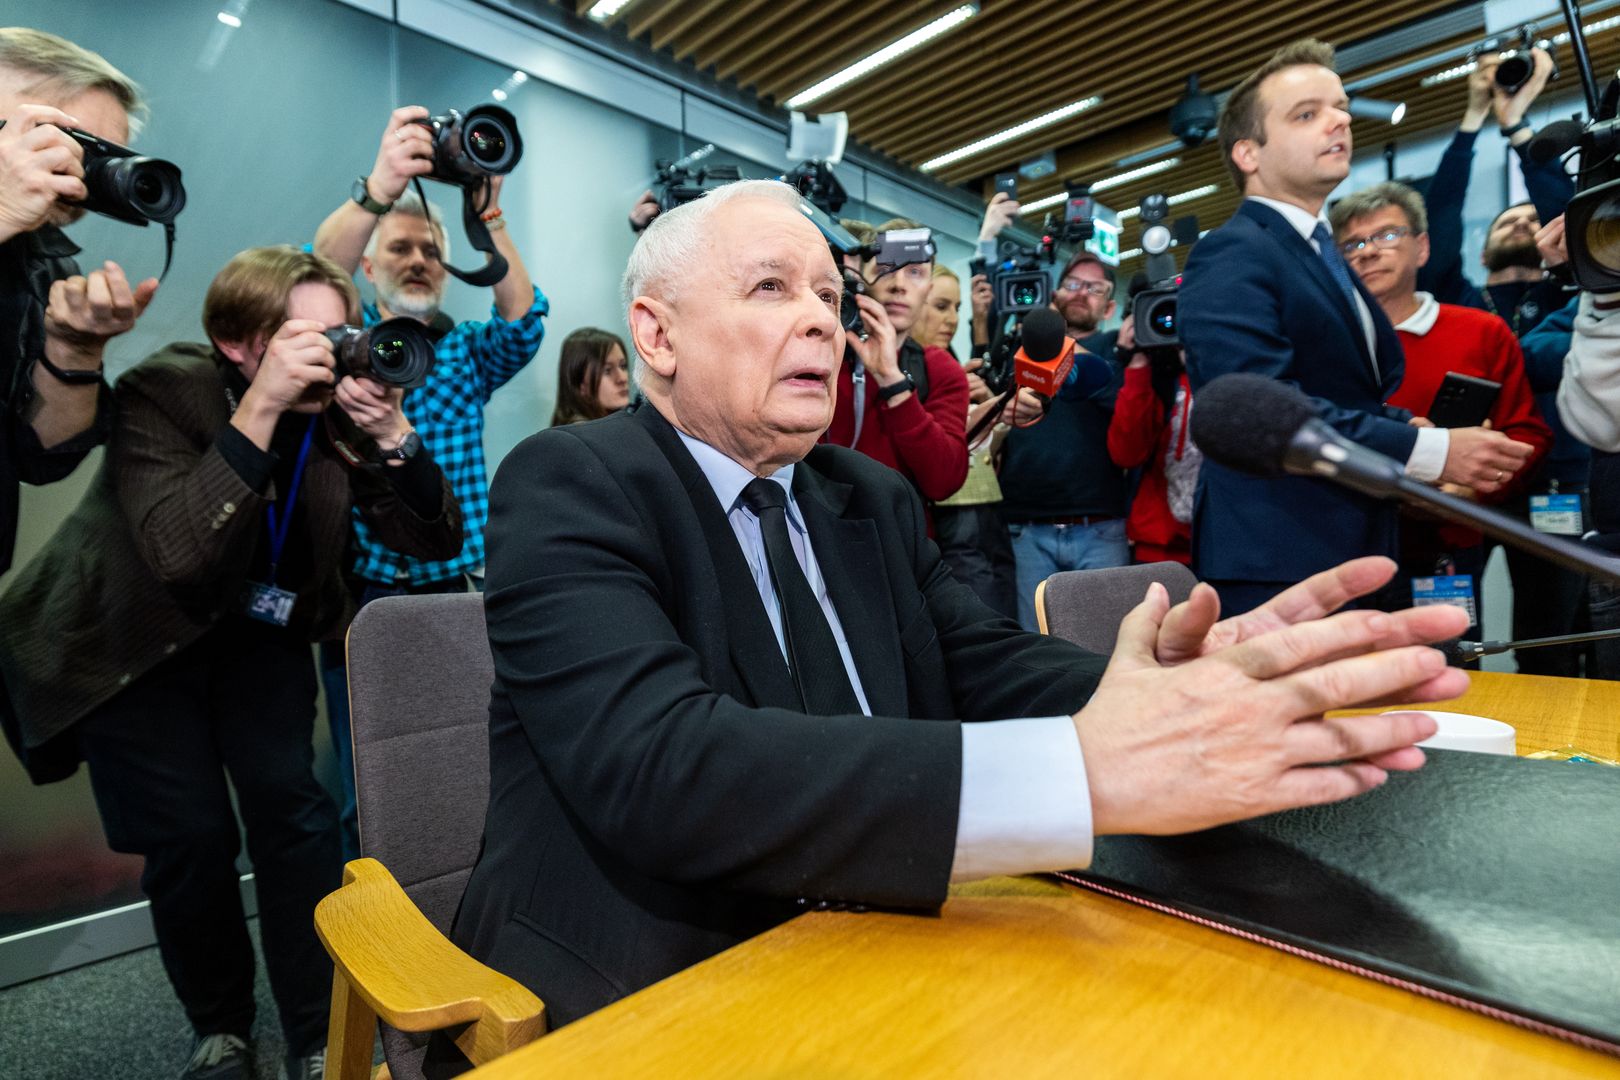 Tak Kaczyński przygotowywał się do przesłuchania. Ujawniono szczegóły